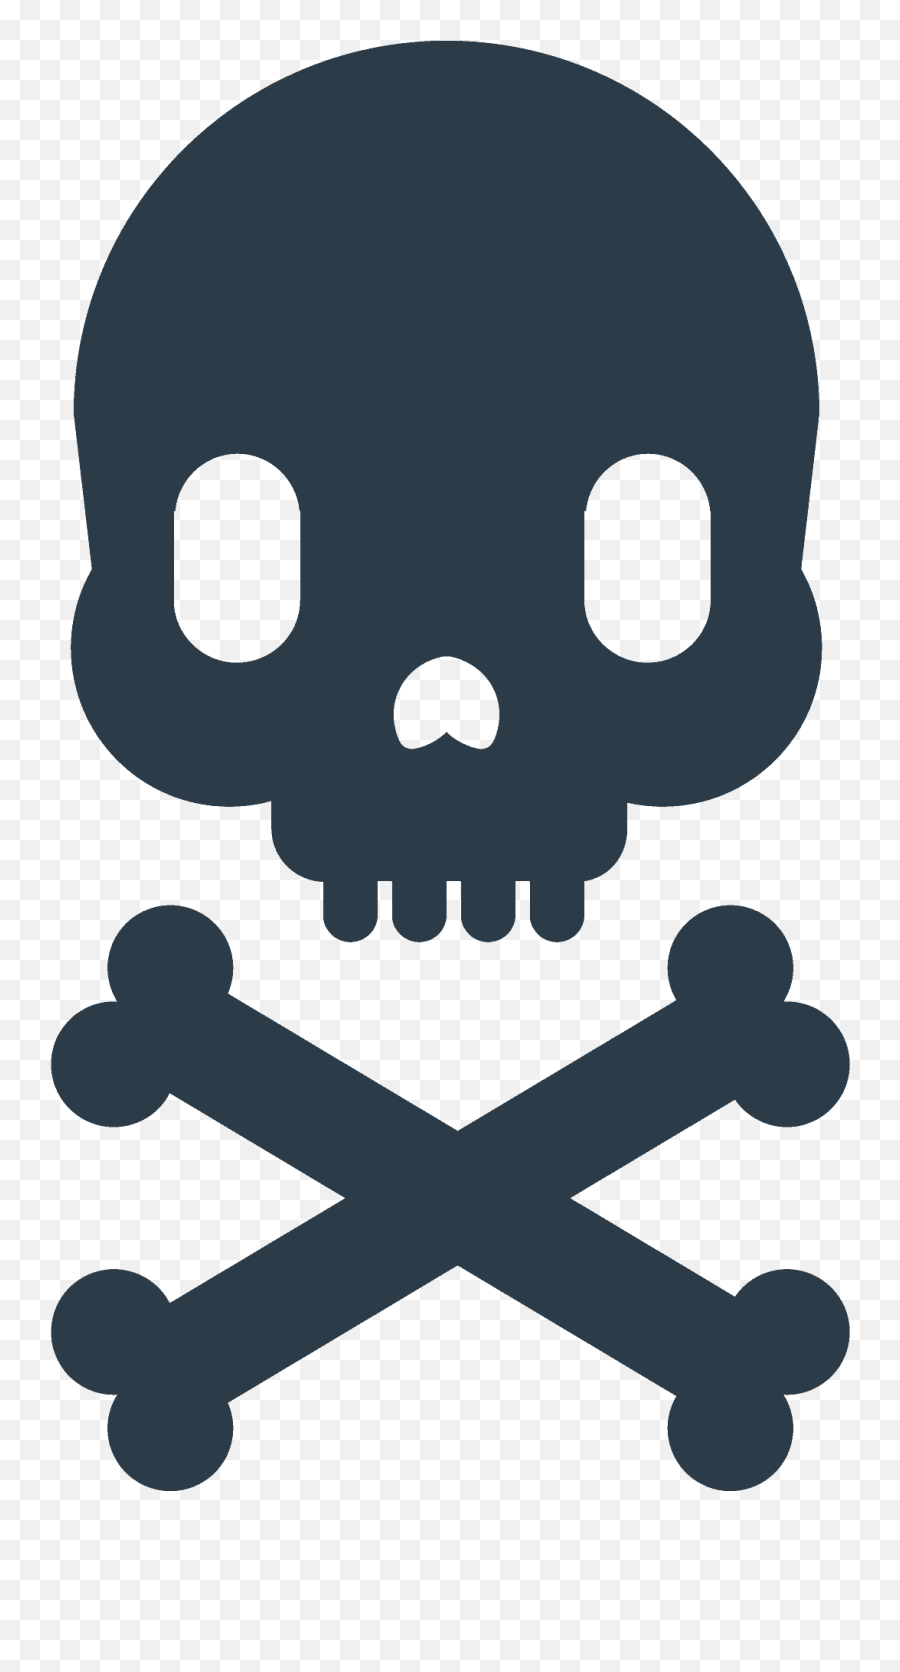 Skull And Crossbones Emoji Clipart Free Download - Call It Quits Png,Crossbones Png